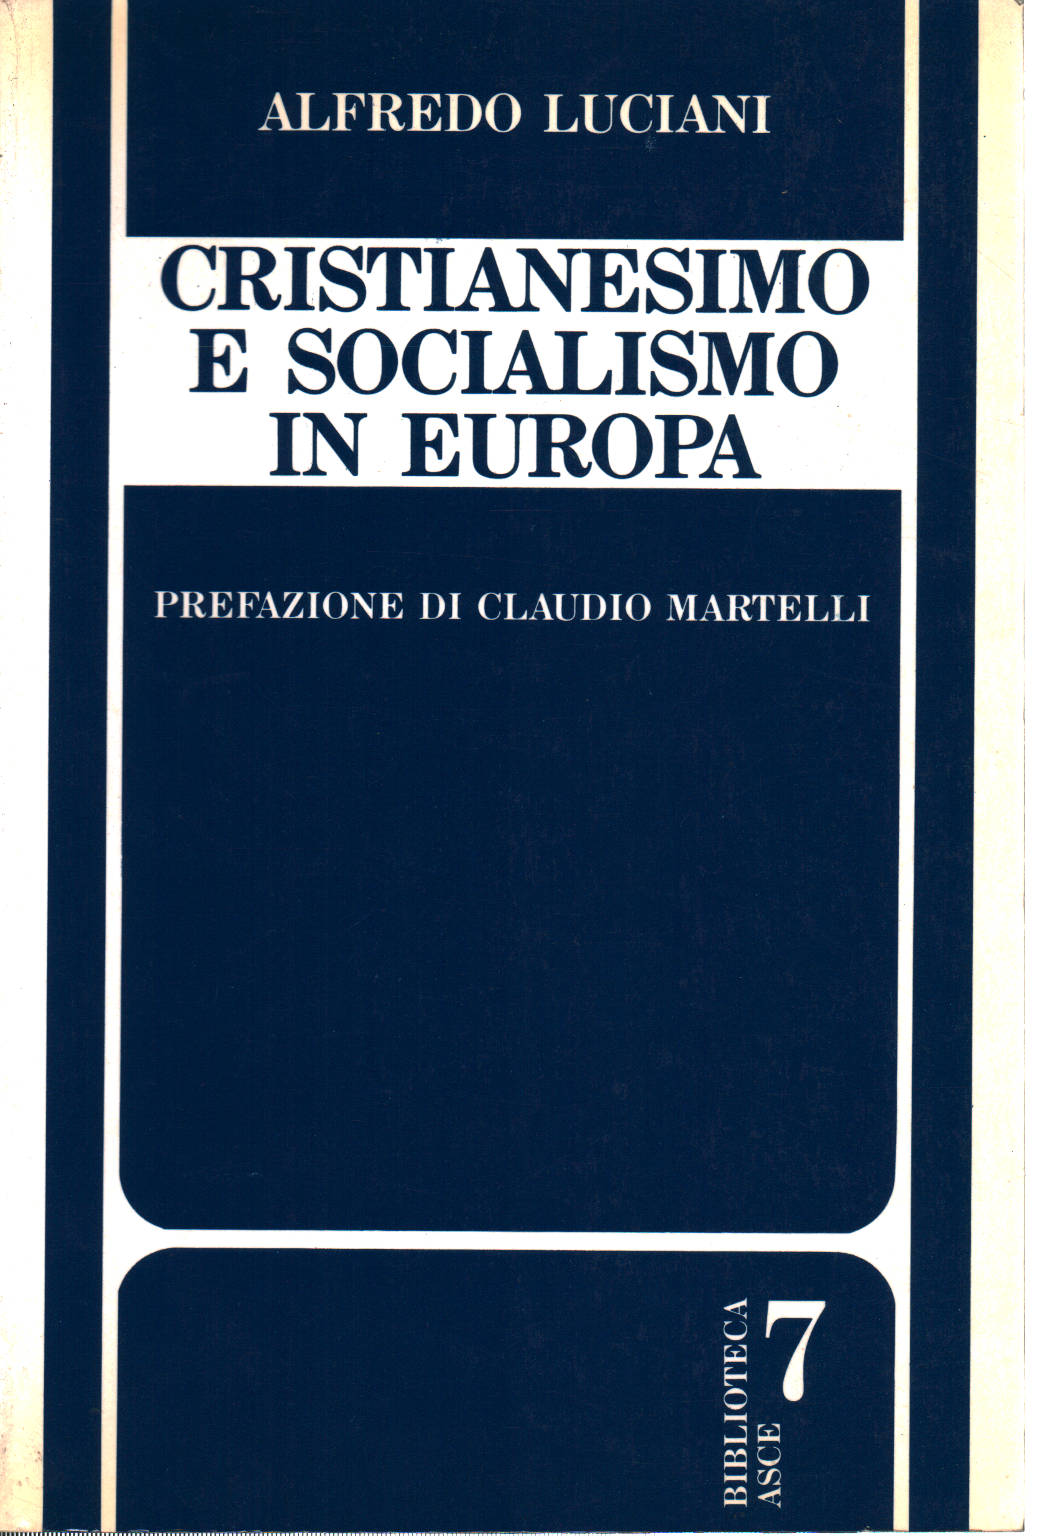 Cristianesimo e socialismo in Europa 1700-1989